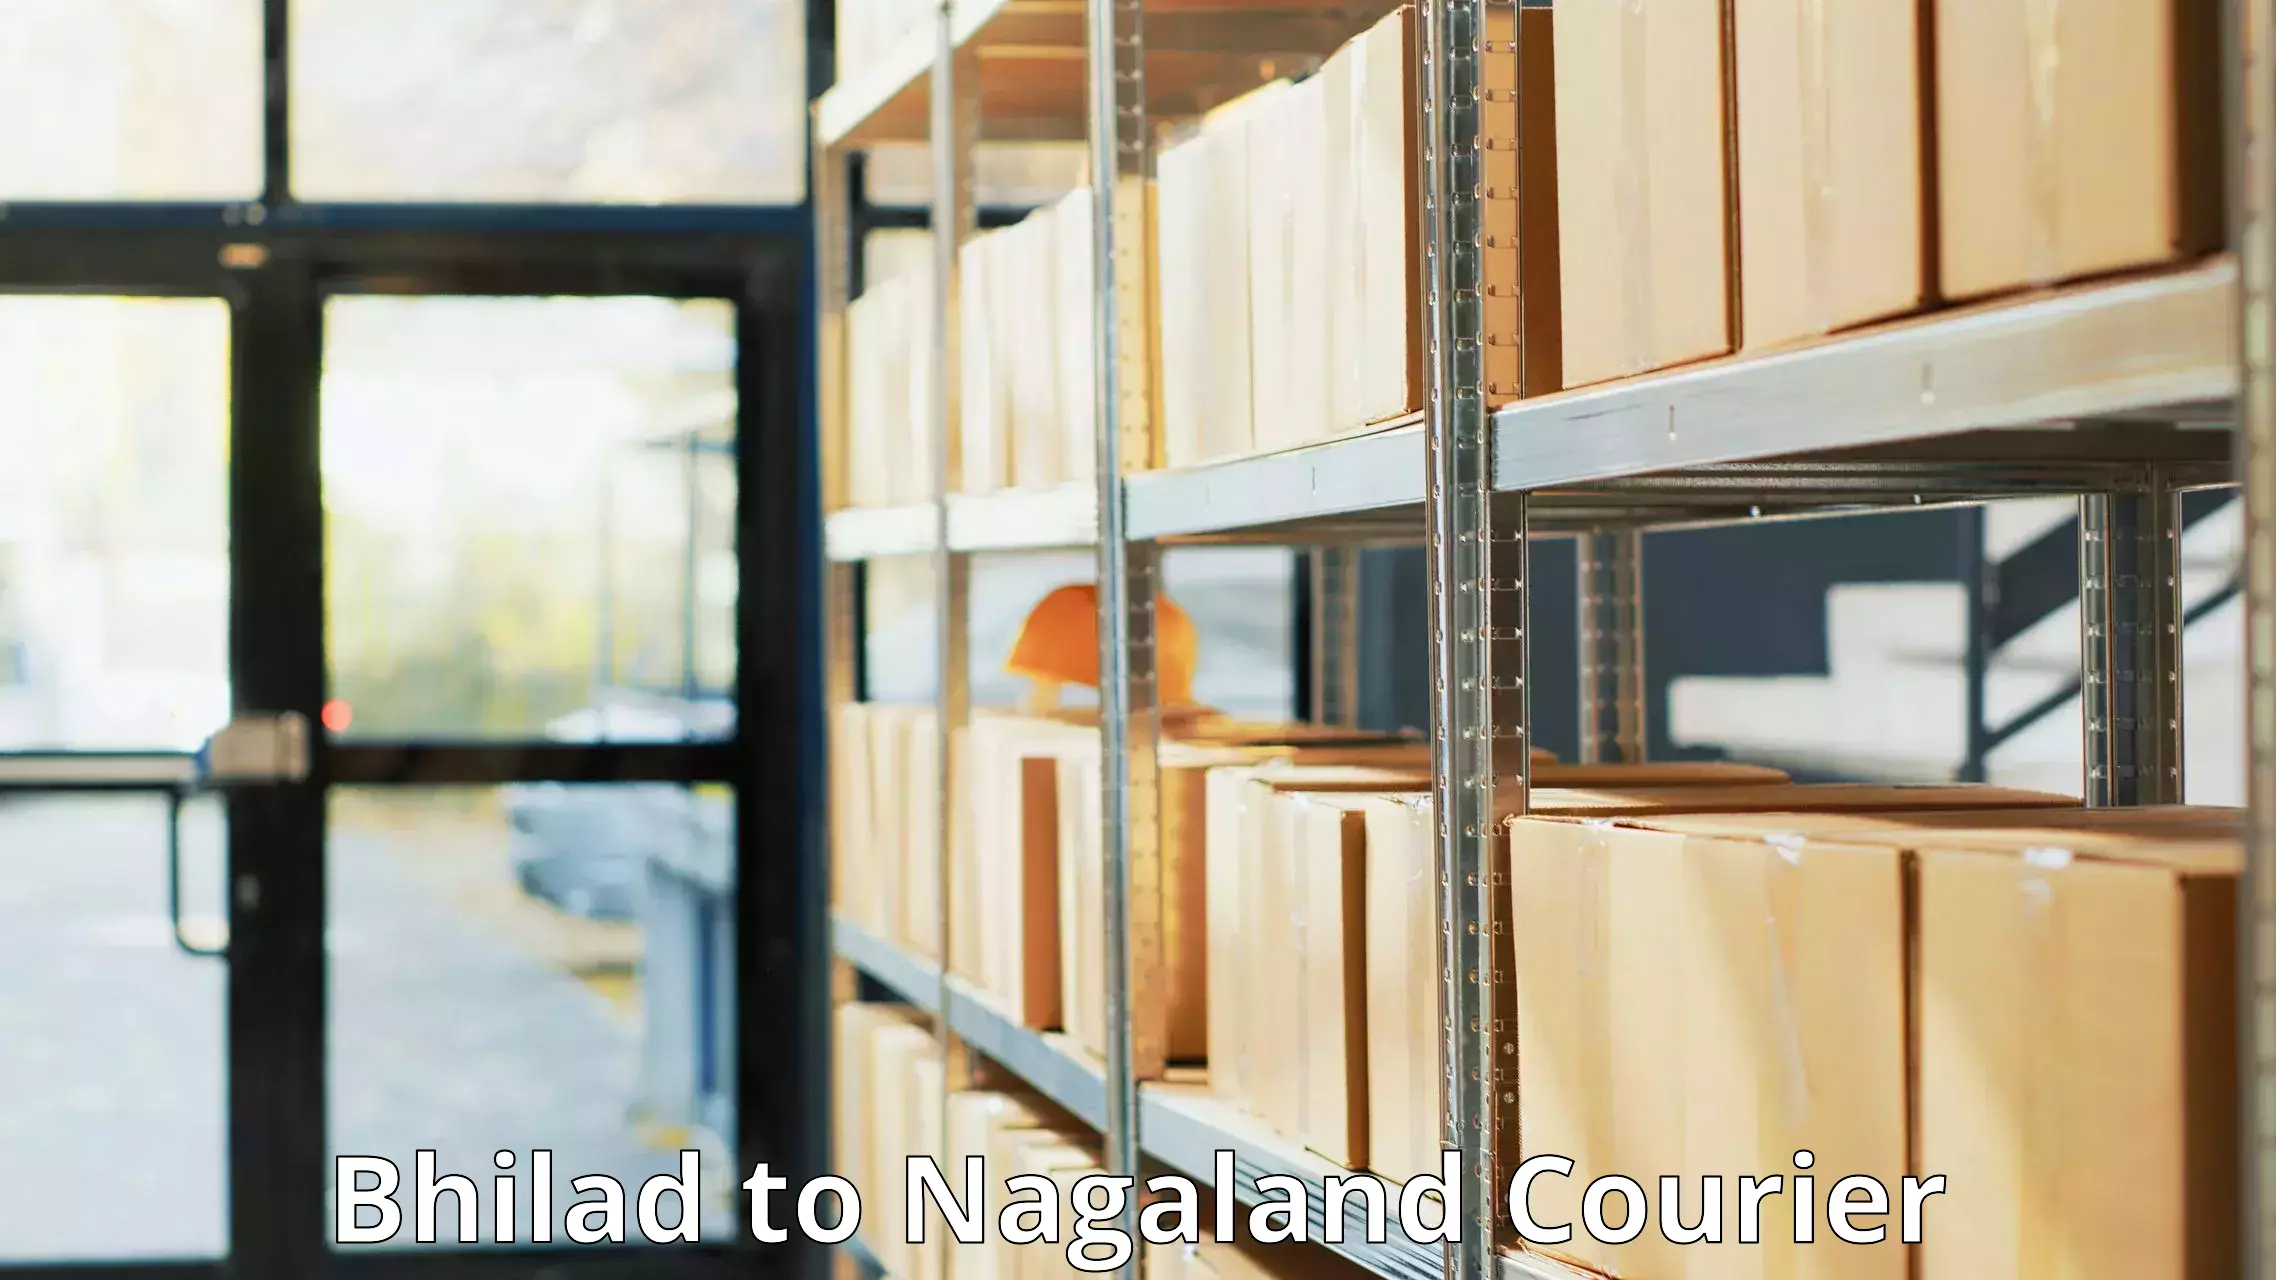 Nationwide parcel services Bhilad to NIT Nagaland